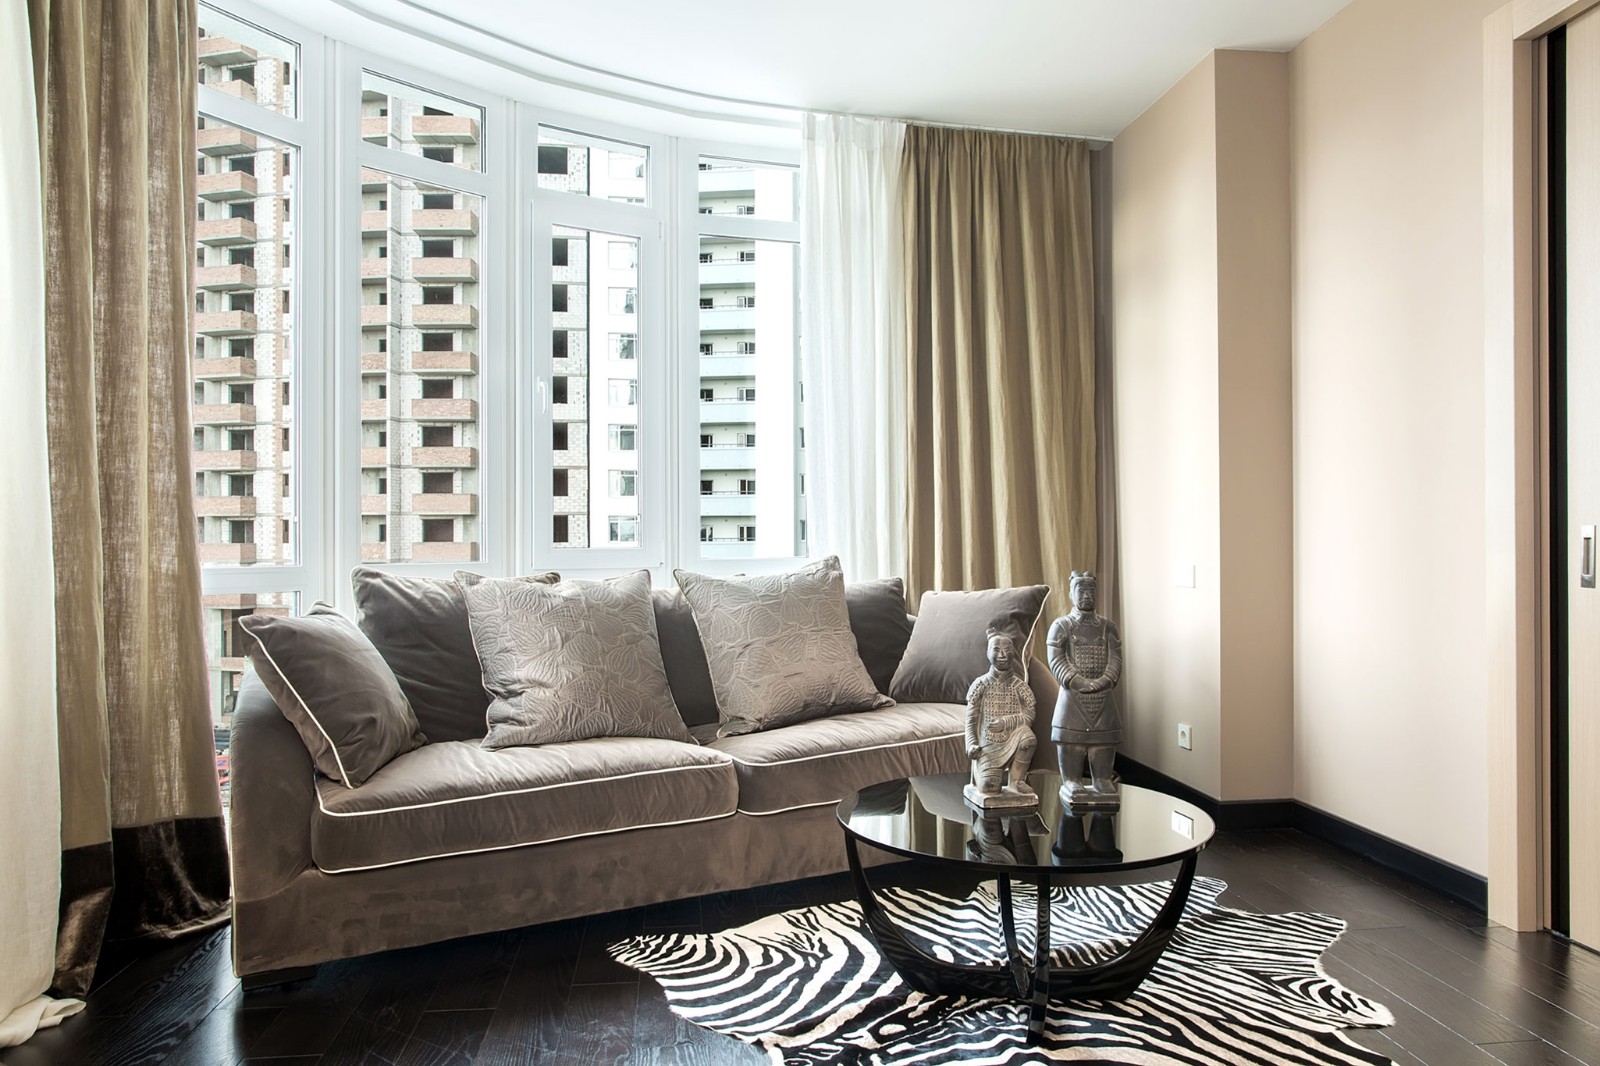 公寓装修,100平米装修,10-15万装修,客厅,现代简约风格,沙发,窗帘